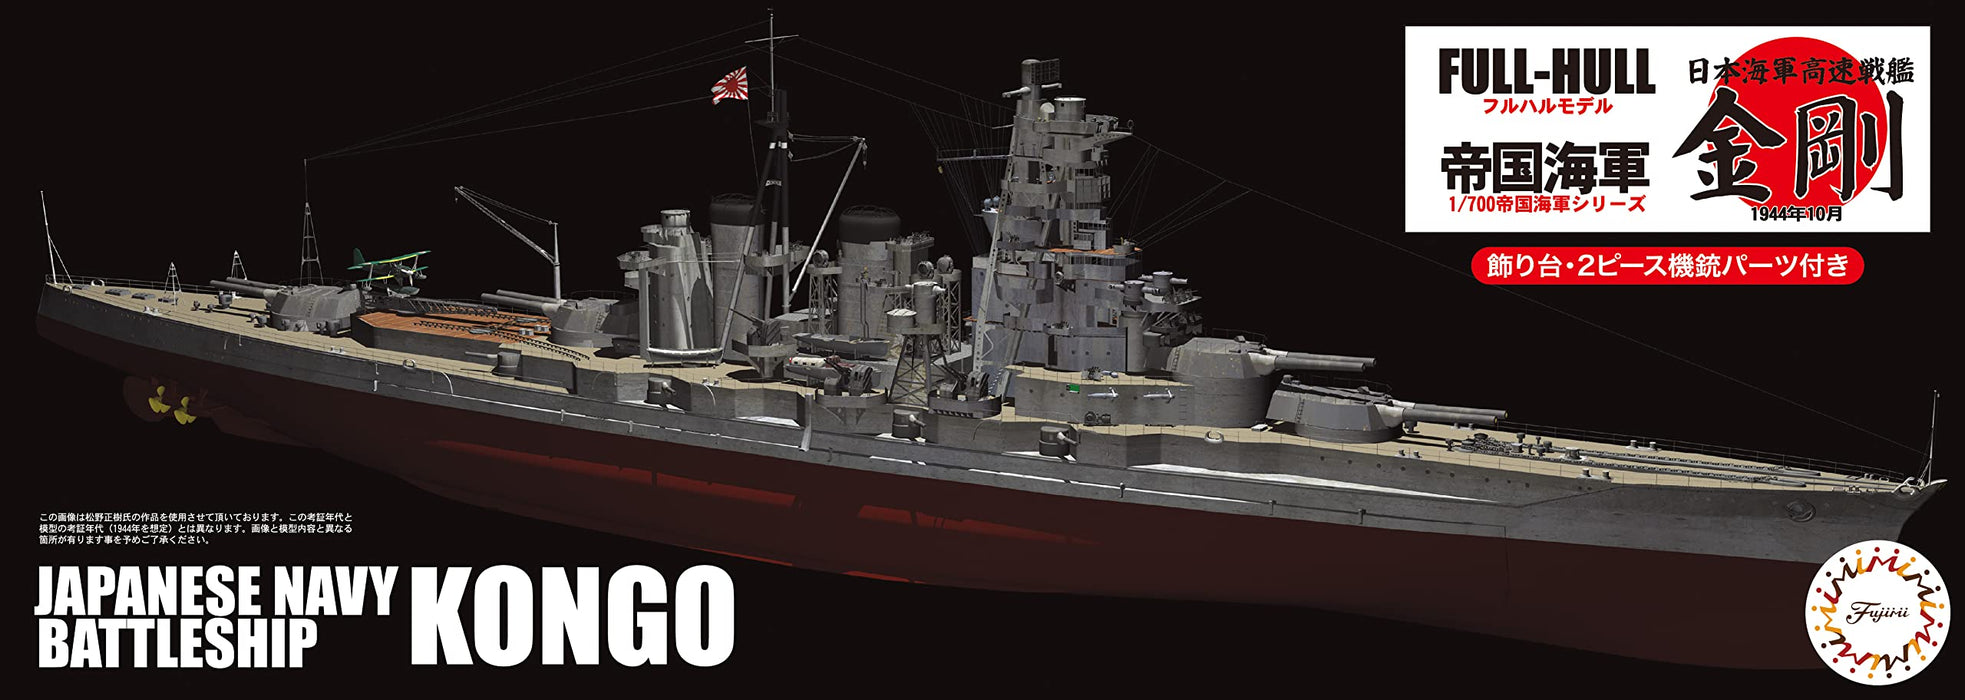 FUJIMI Full Hull 1/700 Japanese Navy Fast Battleship Kongo Plastic Model